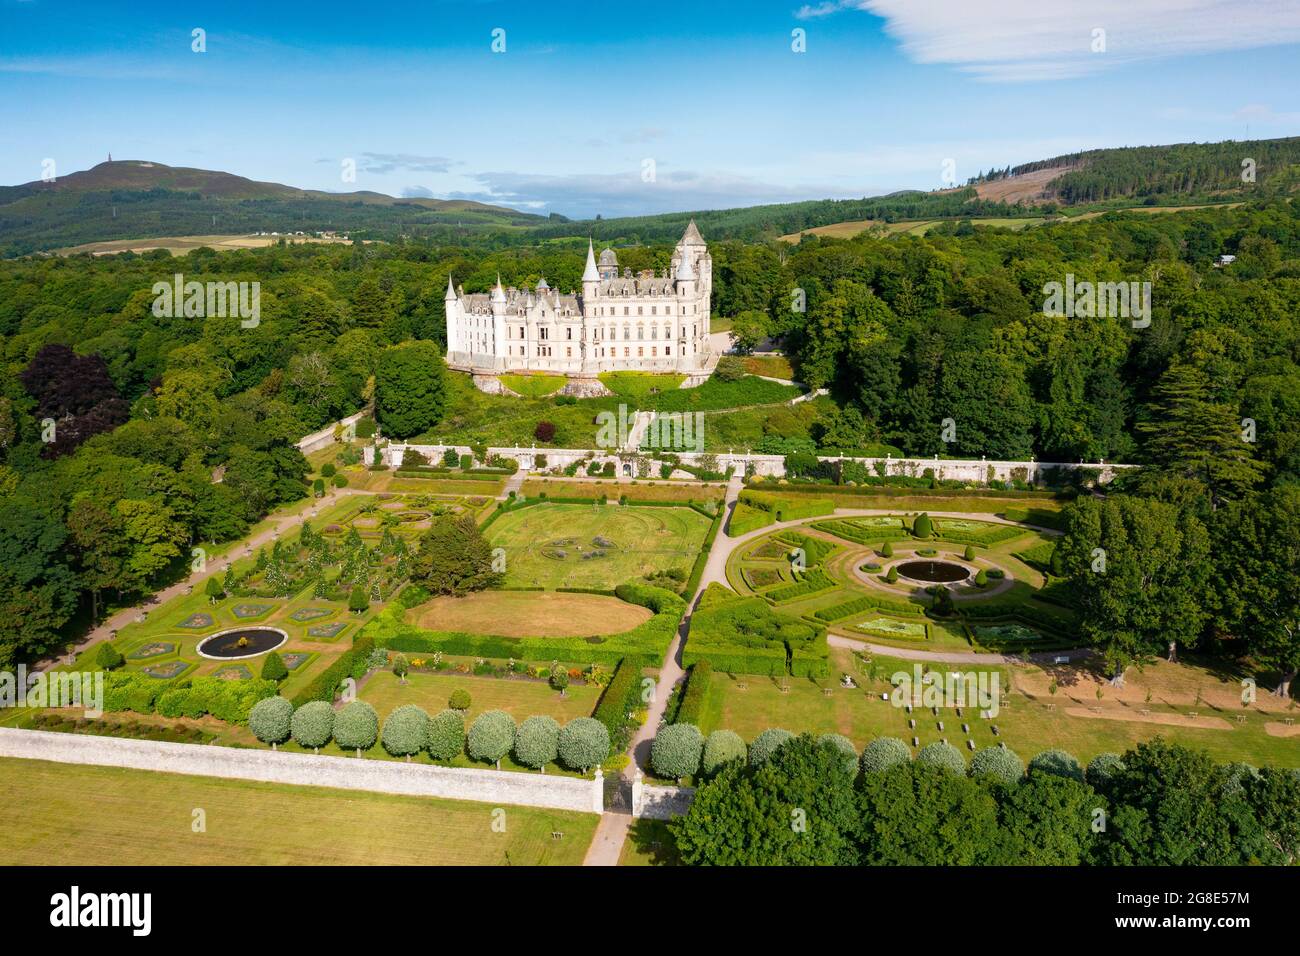 Vue aérienne du drone du château de Dunrobin à Sutherland, Écosse, Royaume-Uni Banque D'Images